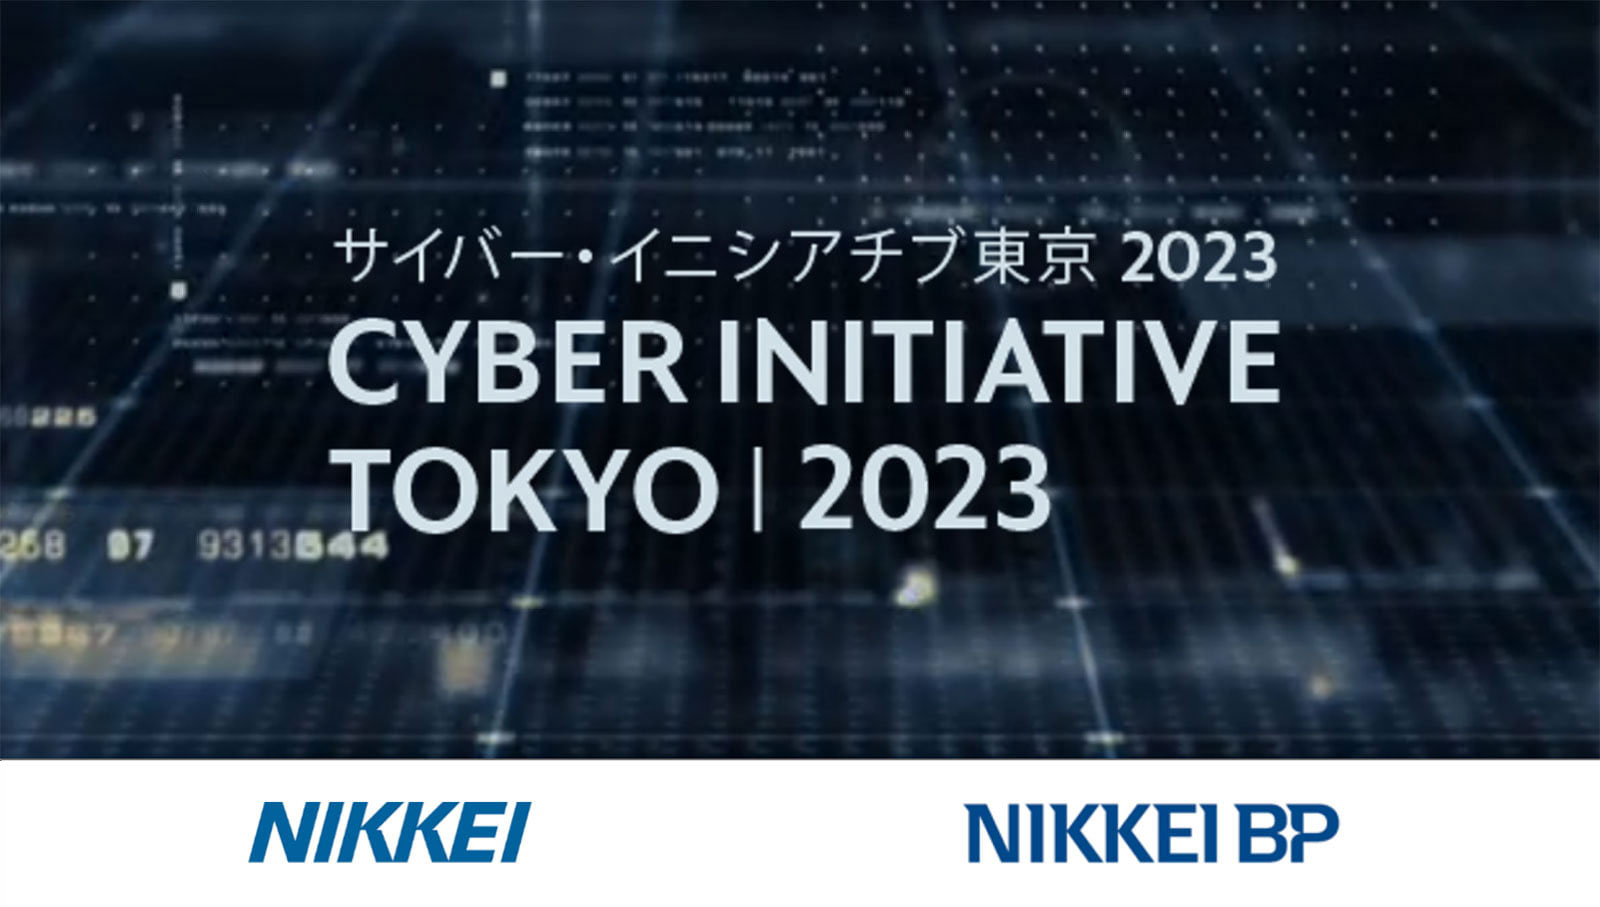 CYBER INITIATIVE TOKYO 2023